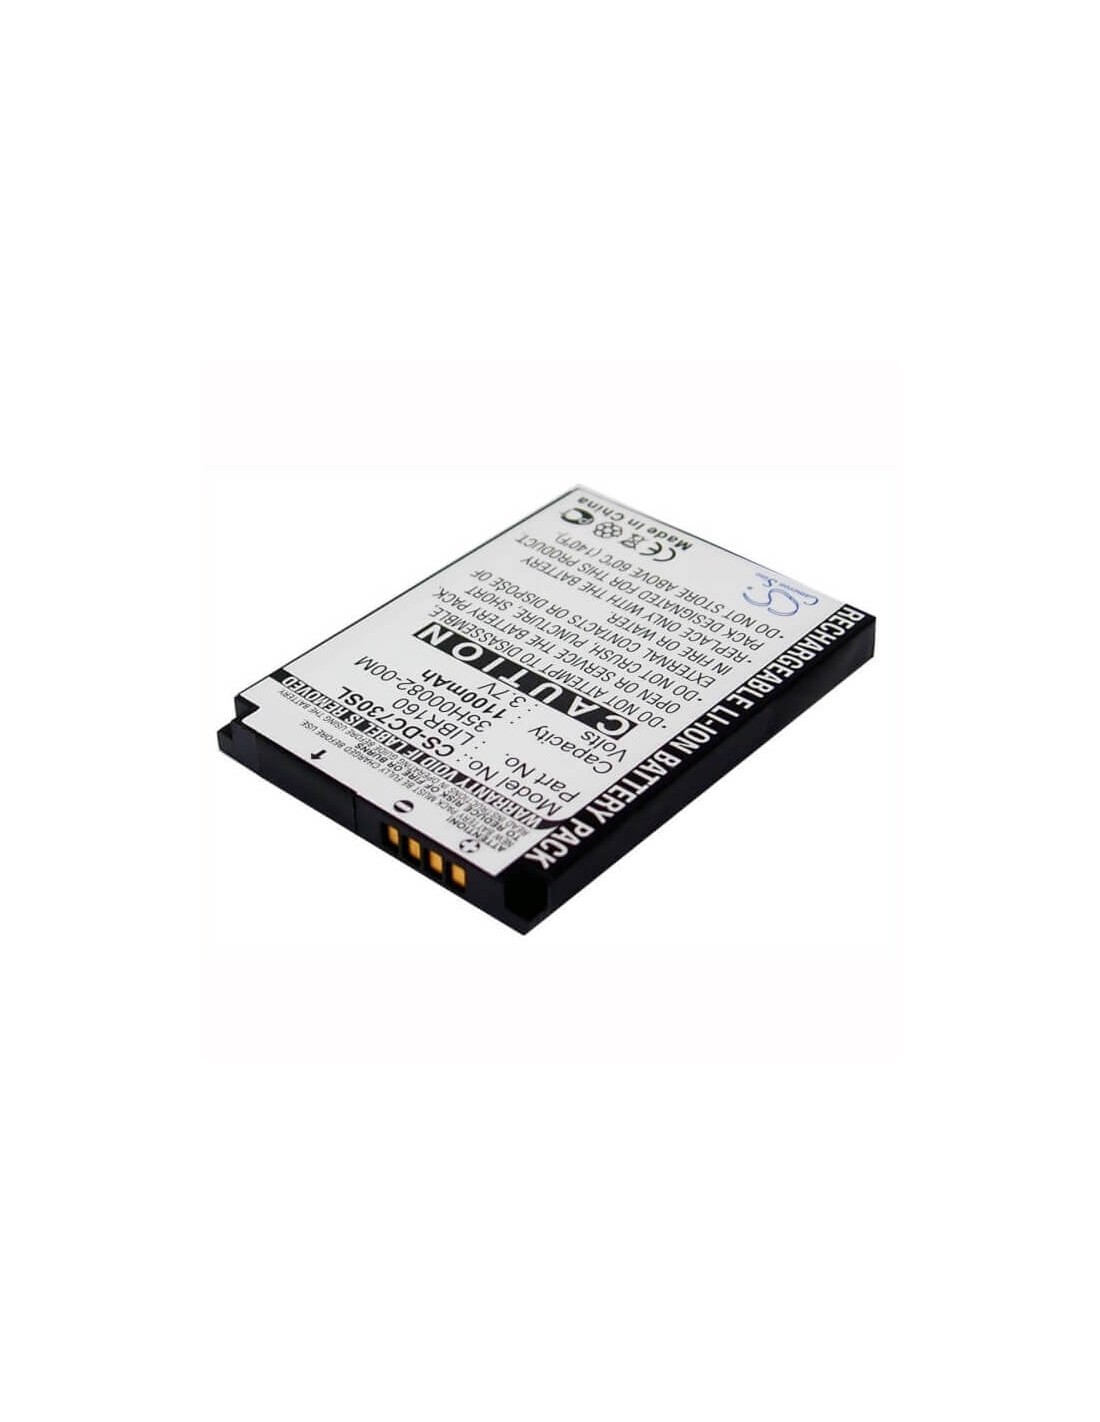 Battery for HTC VOX, S710, S711 3.7V, 1100mAh - 4.07Wh